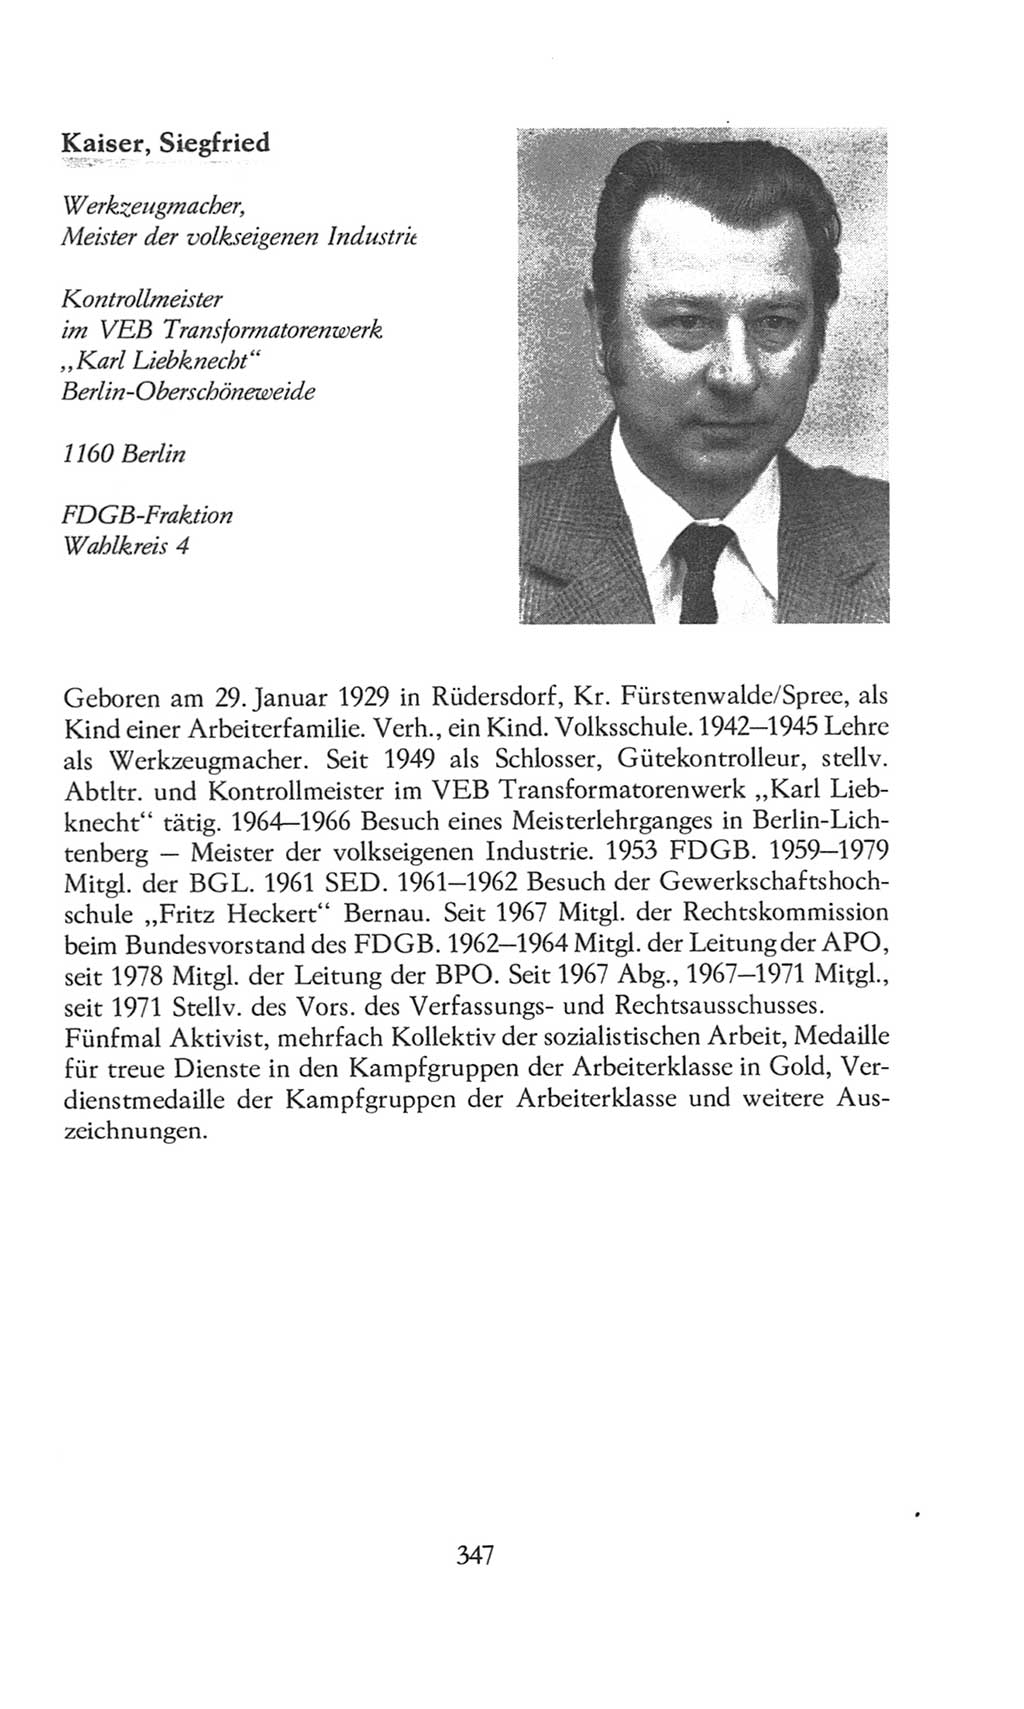 Volkskammer (VK) der Deutschen Demokratischen Republik (DDR), 8. Wahlperiode 1981-1986, Seite 347 (VK. DDR 8. WP. 1981-1986, S. 347)